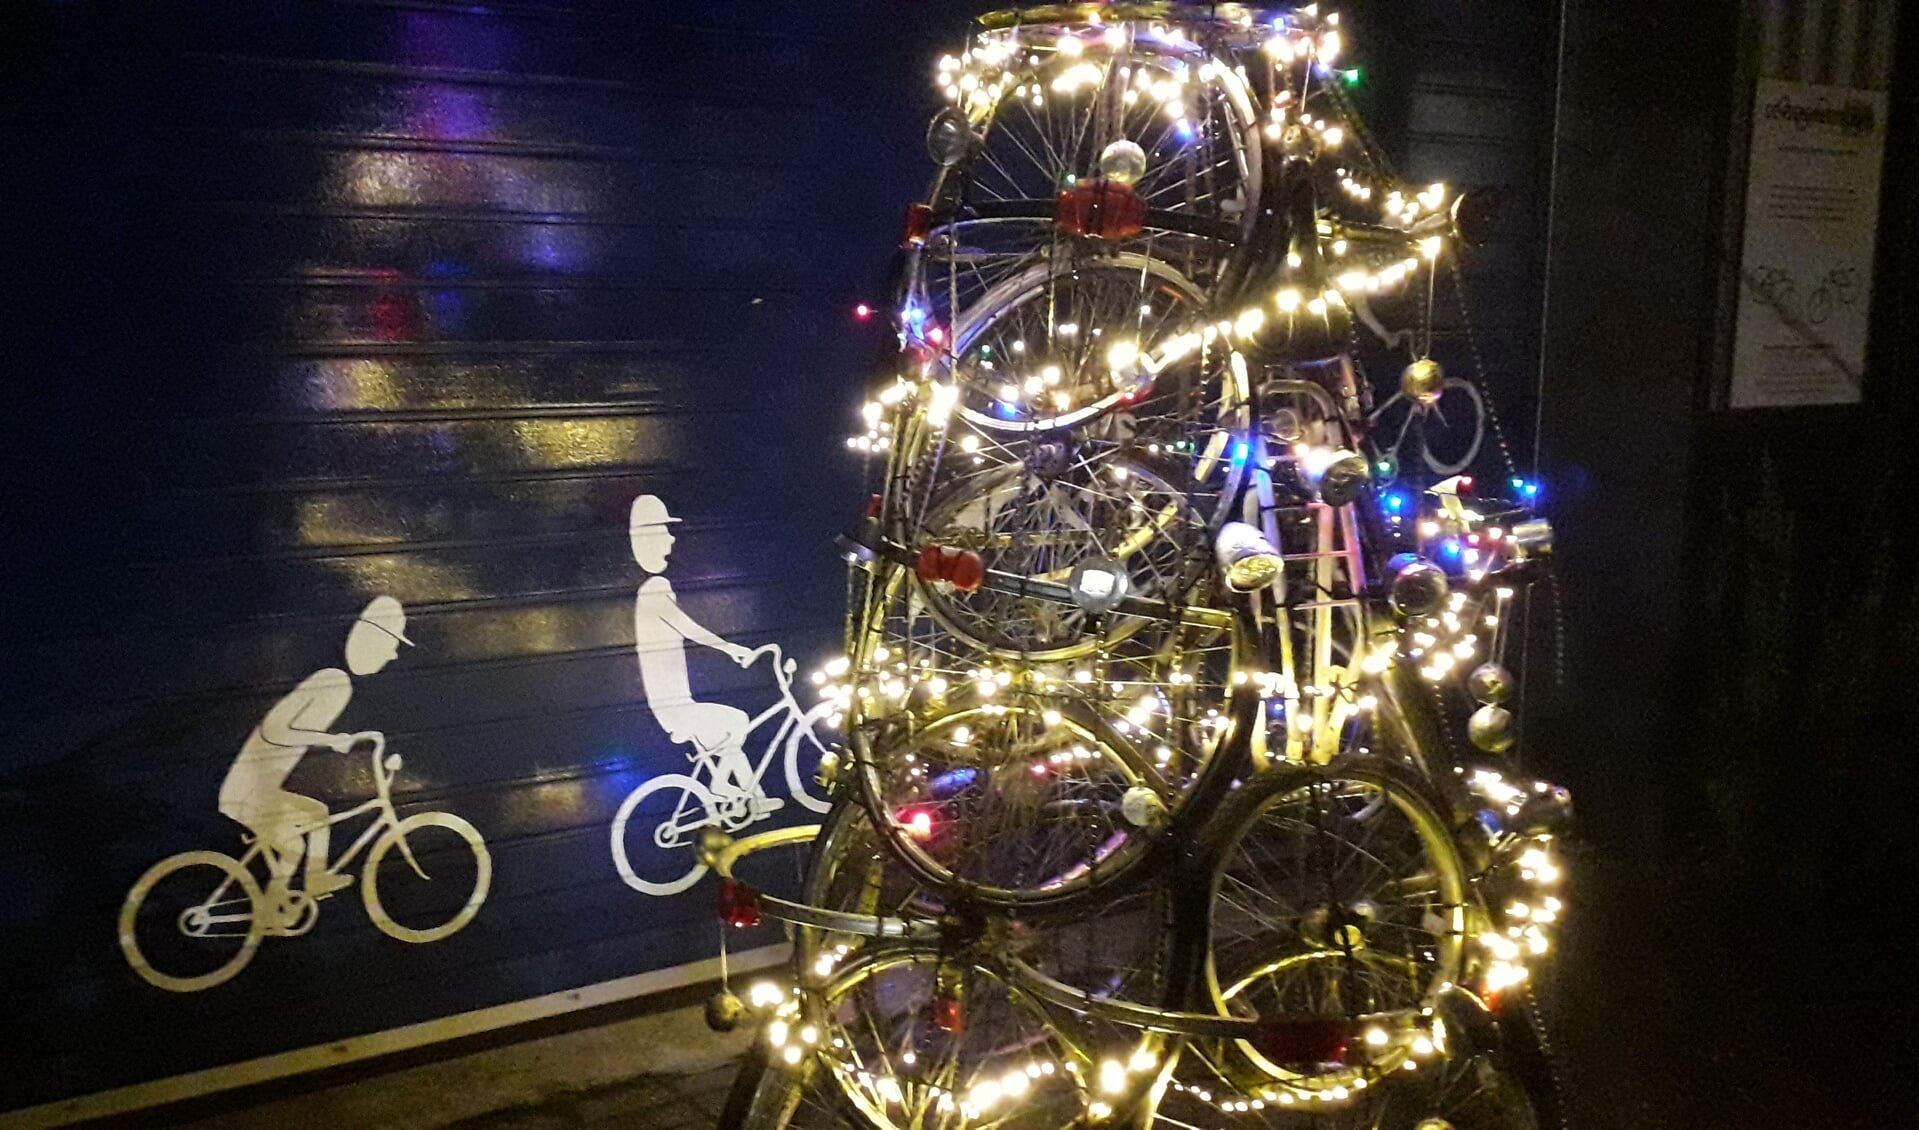 De 'kerstboom' opgebouwd uit fietsonderdelen